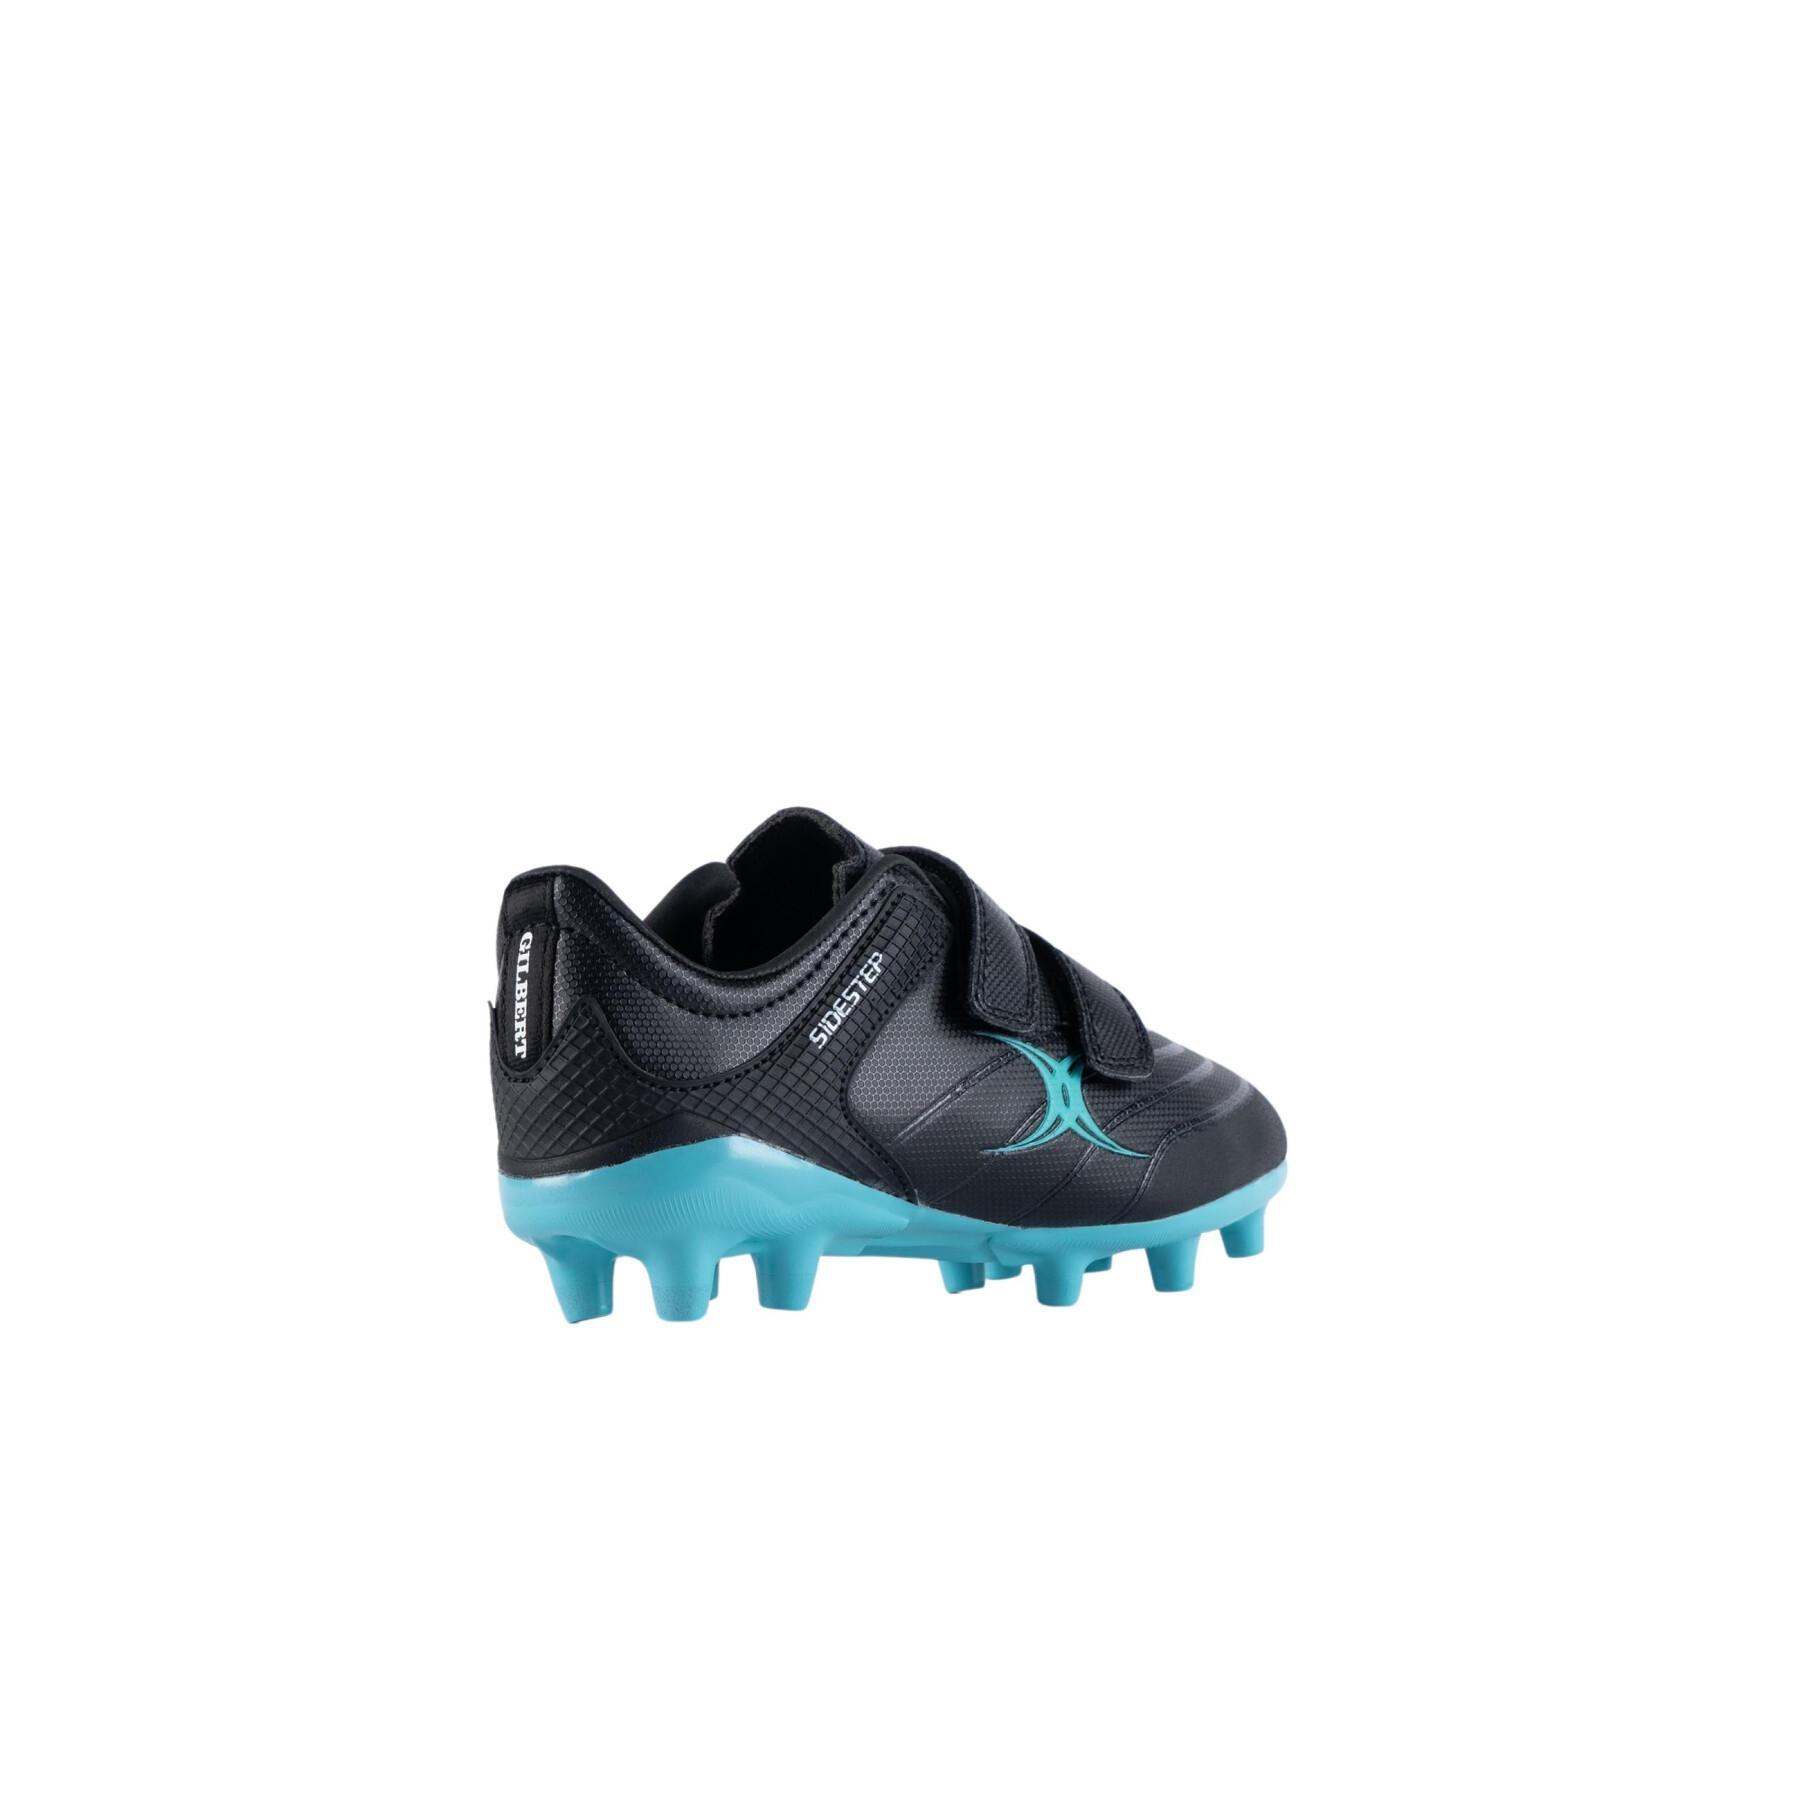 Sapatos de râguebi para crianças Gilbert Sidestep X15 LO MSX